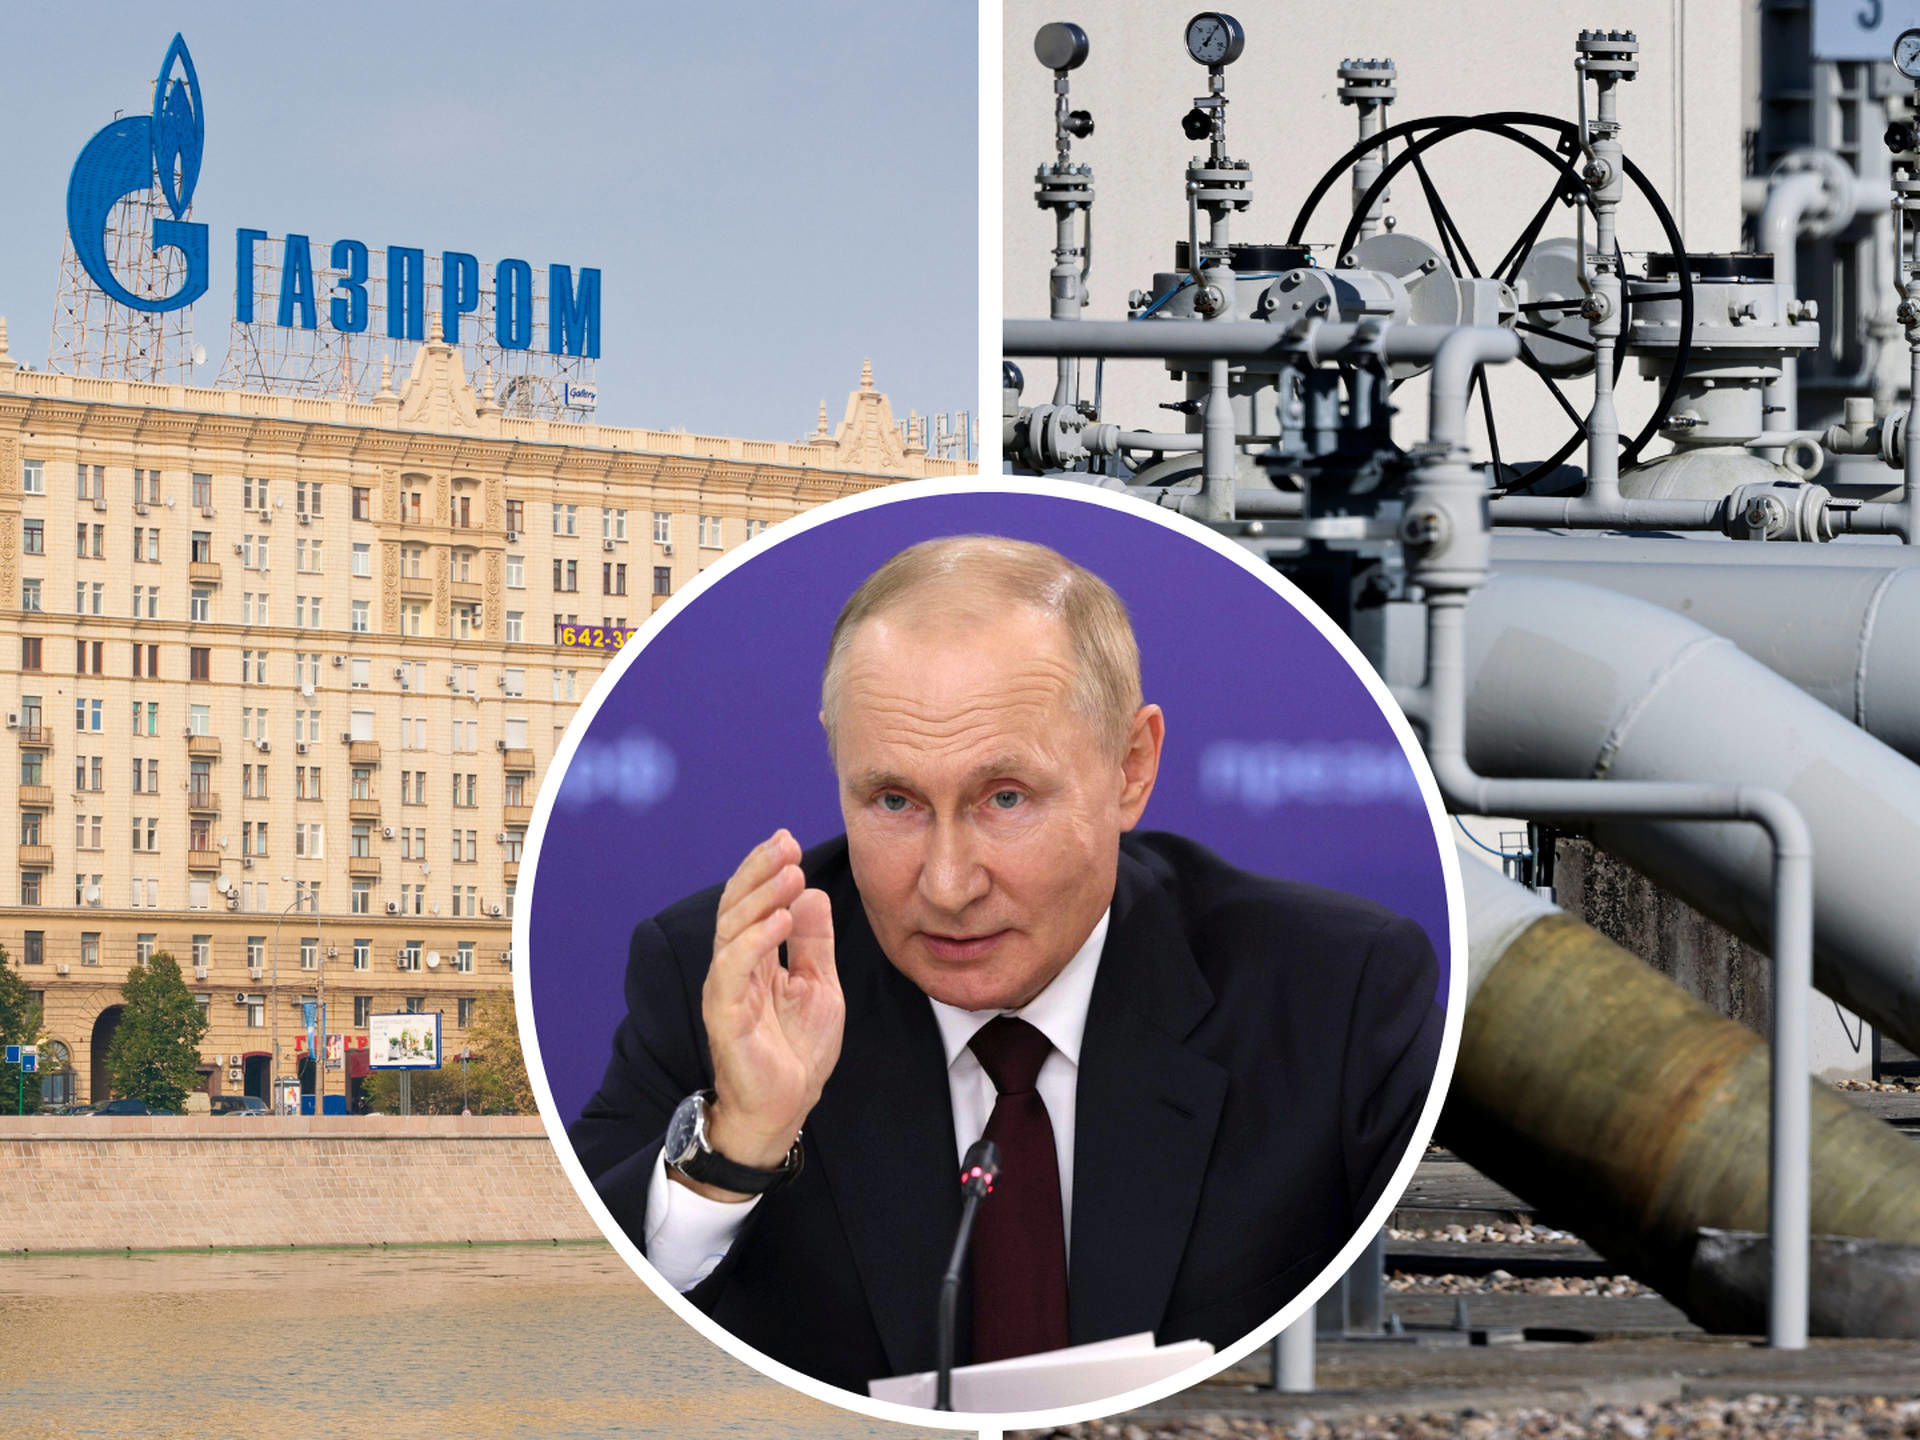  انتقال گاز به اروپا متوقف شد/ پوتین تهدید خود را عملی کرد؟
